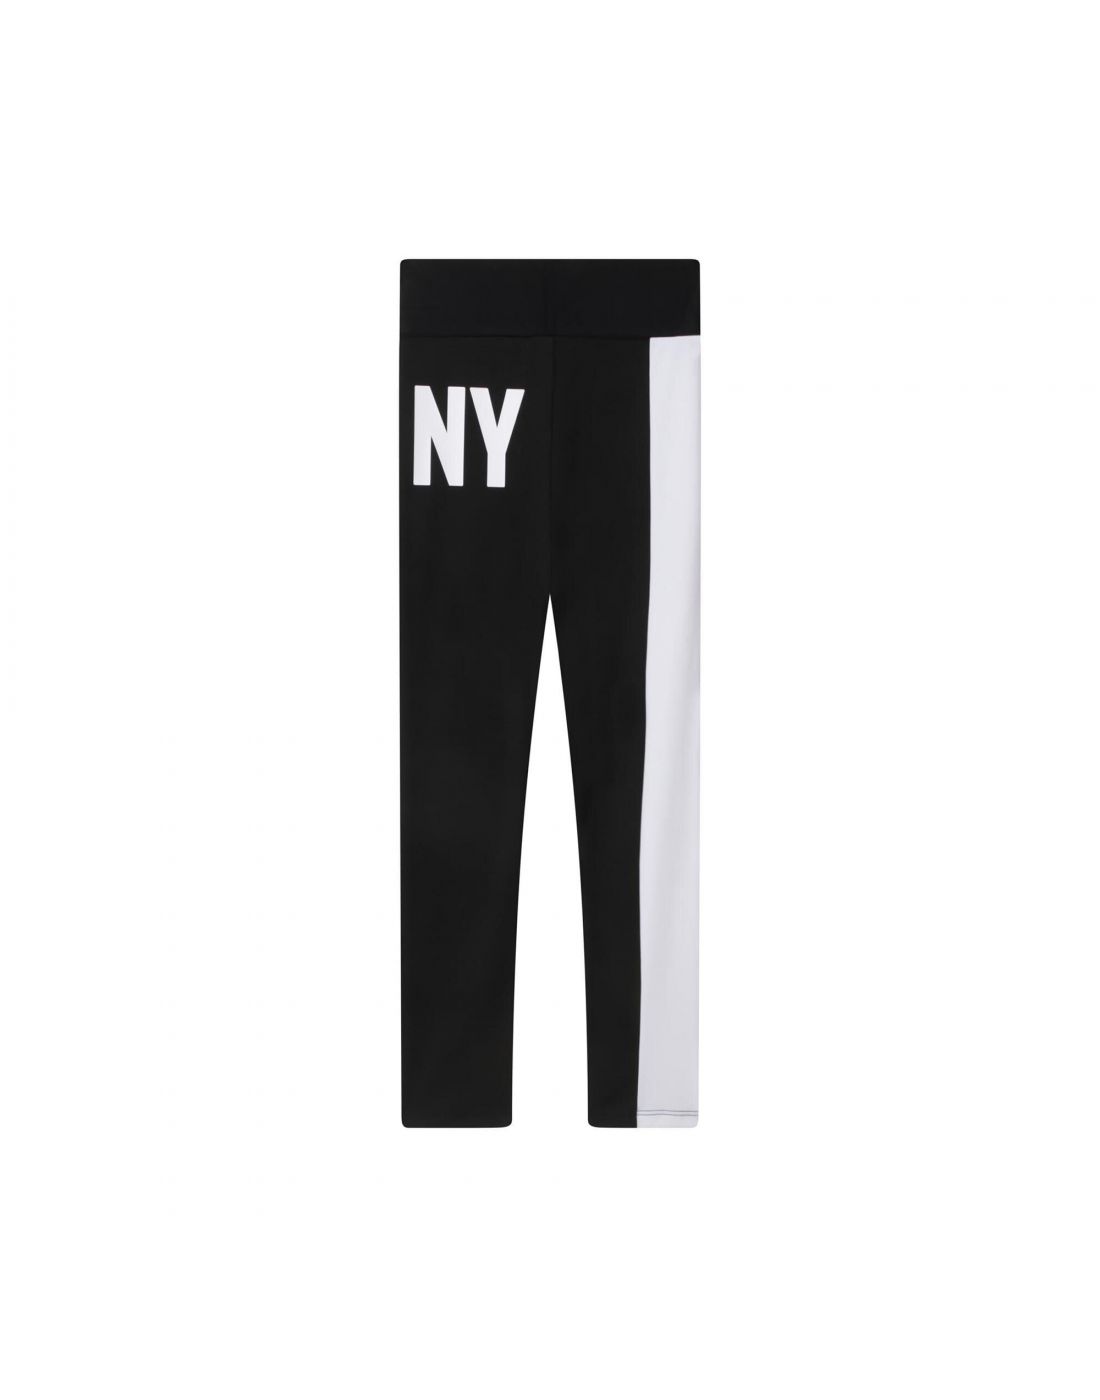 MICHAEL KORS, Logo Leggings, Kids, Black 09B